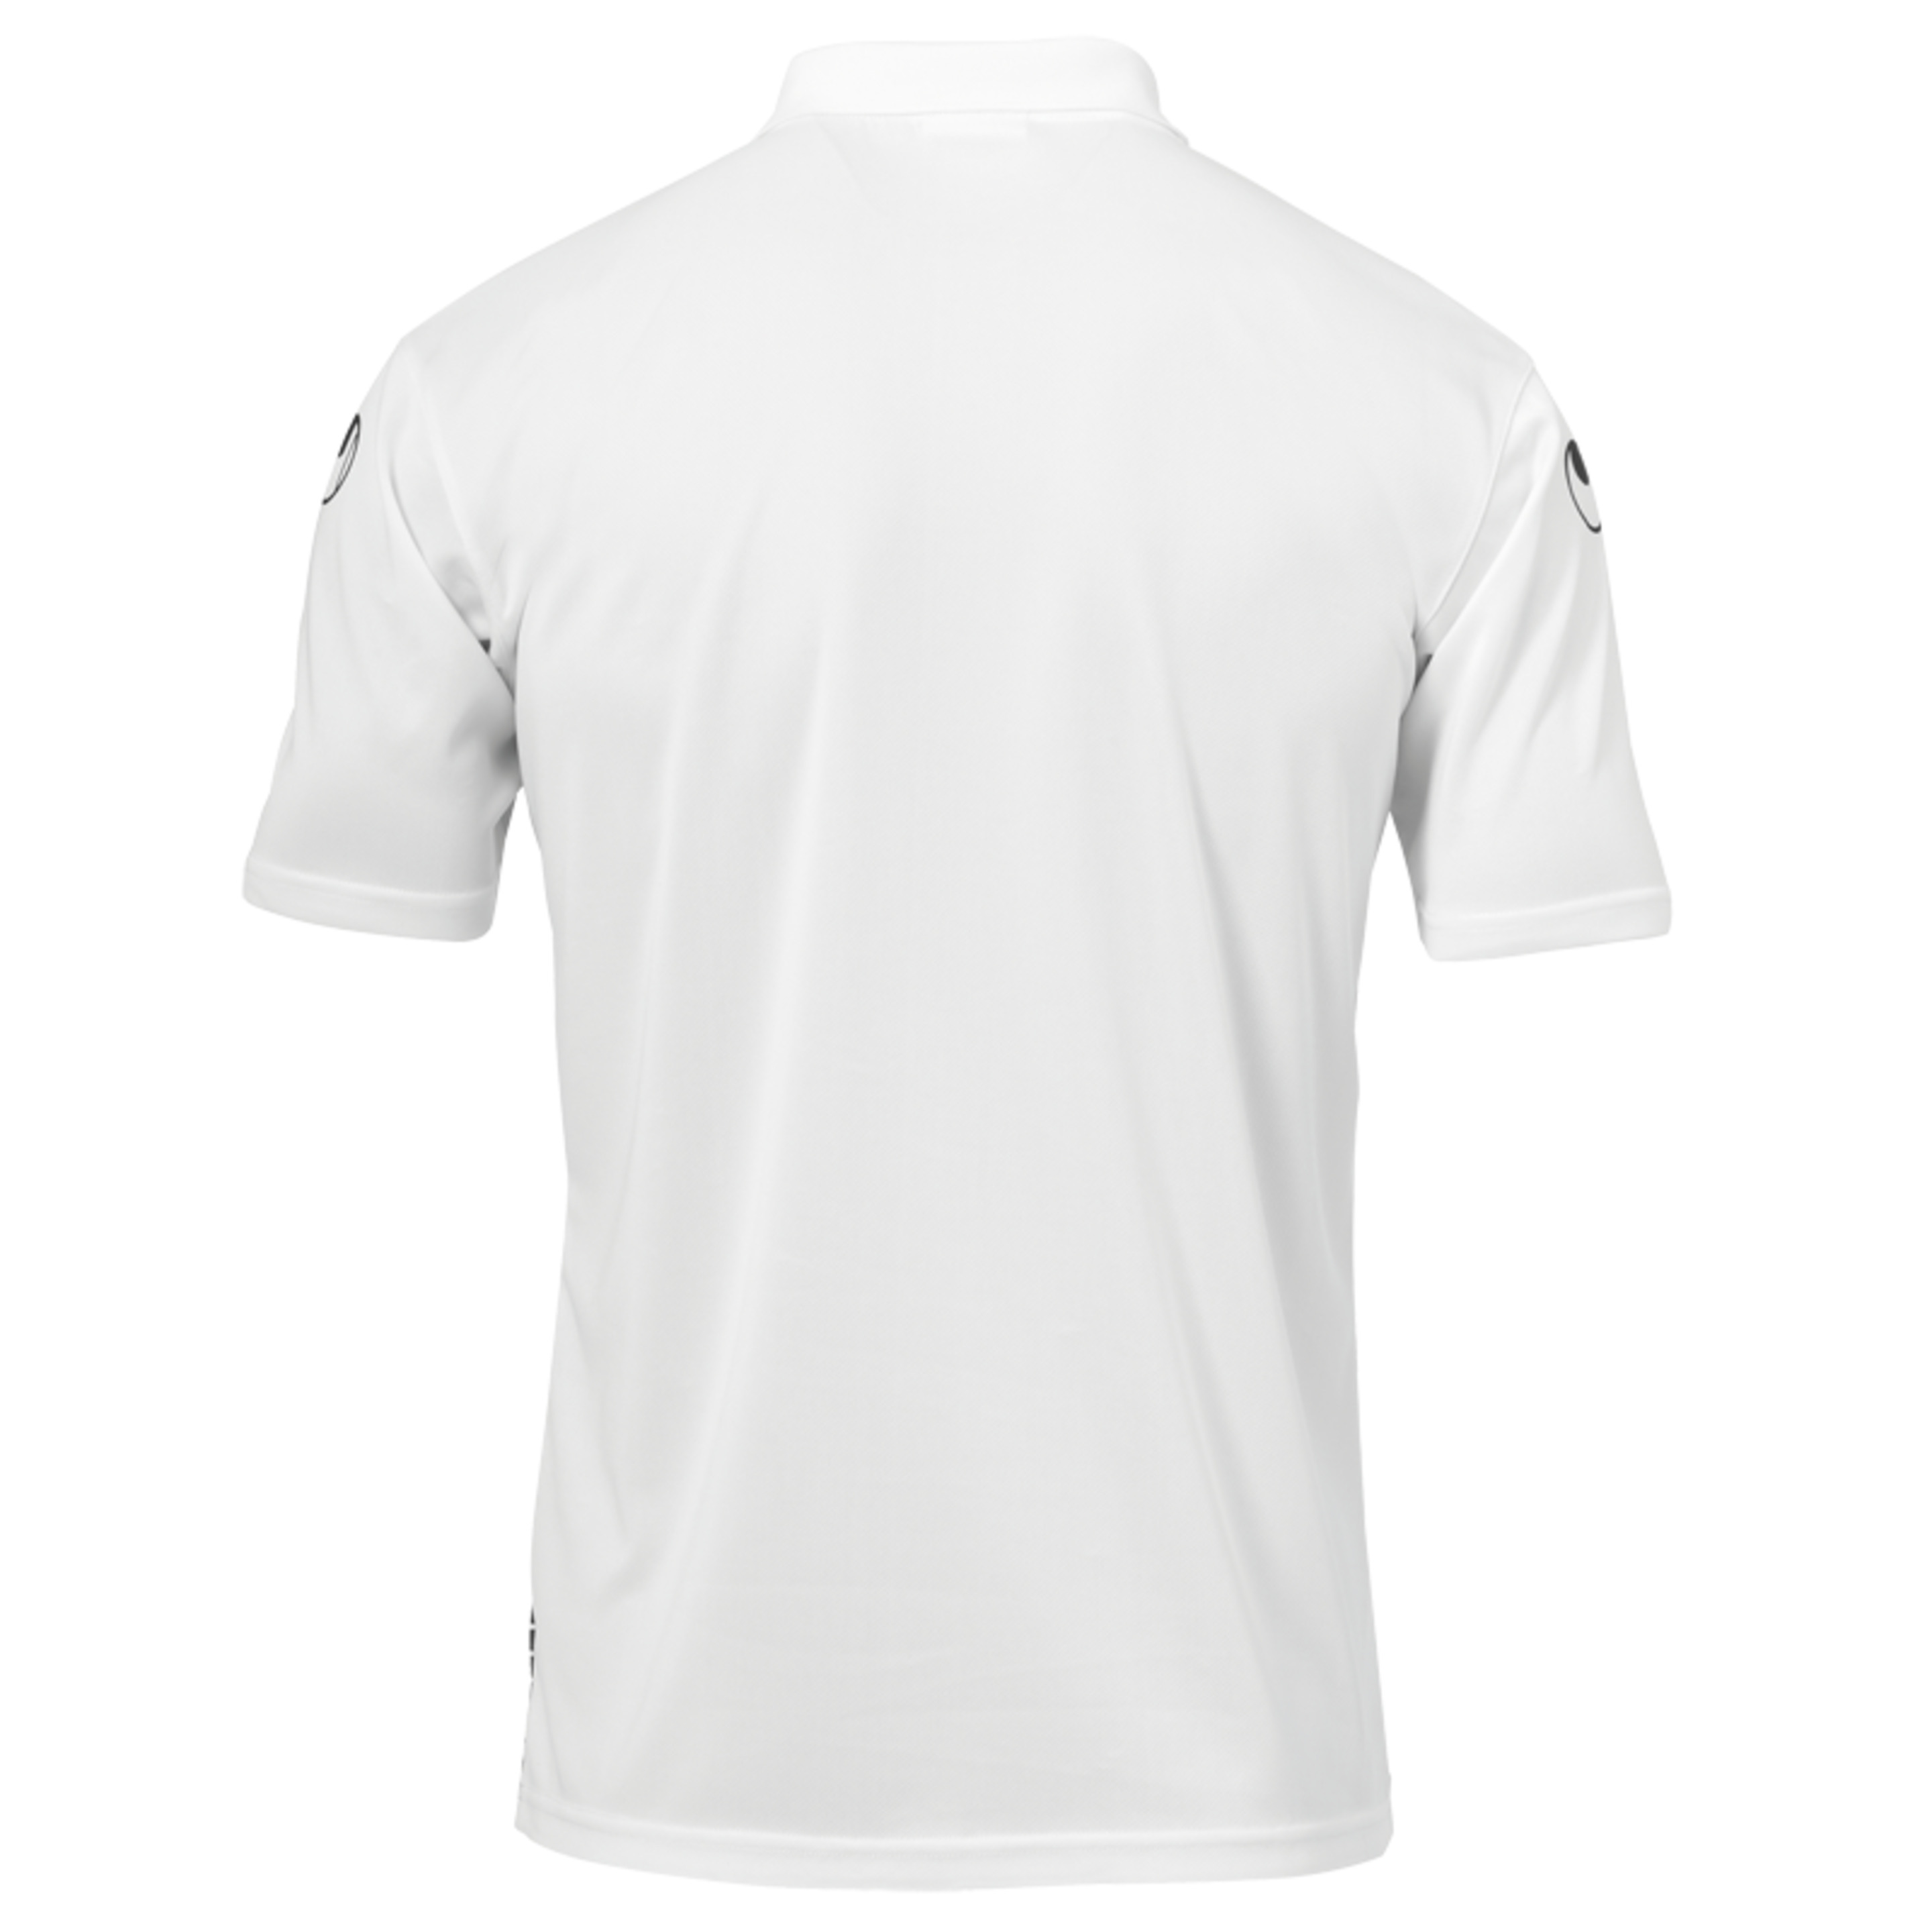 Score Polo Shirt Blanco/negro Uhlsport